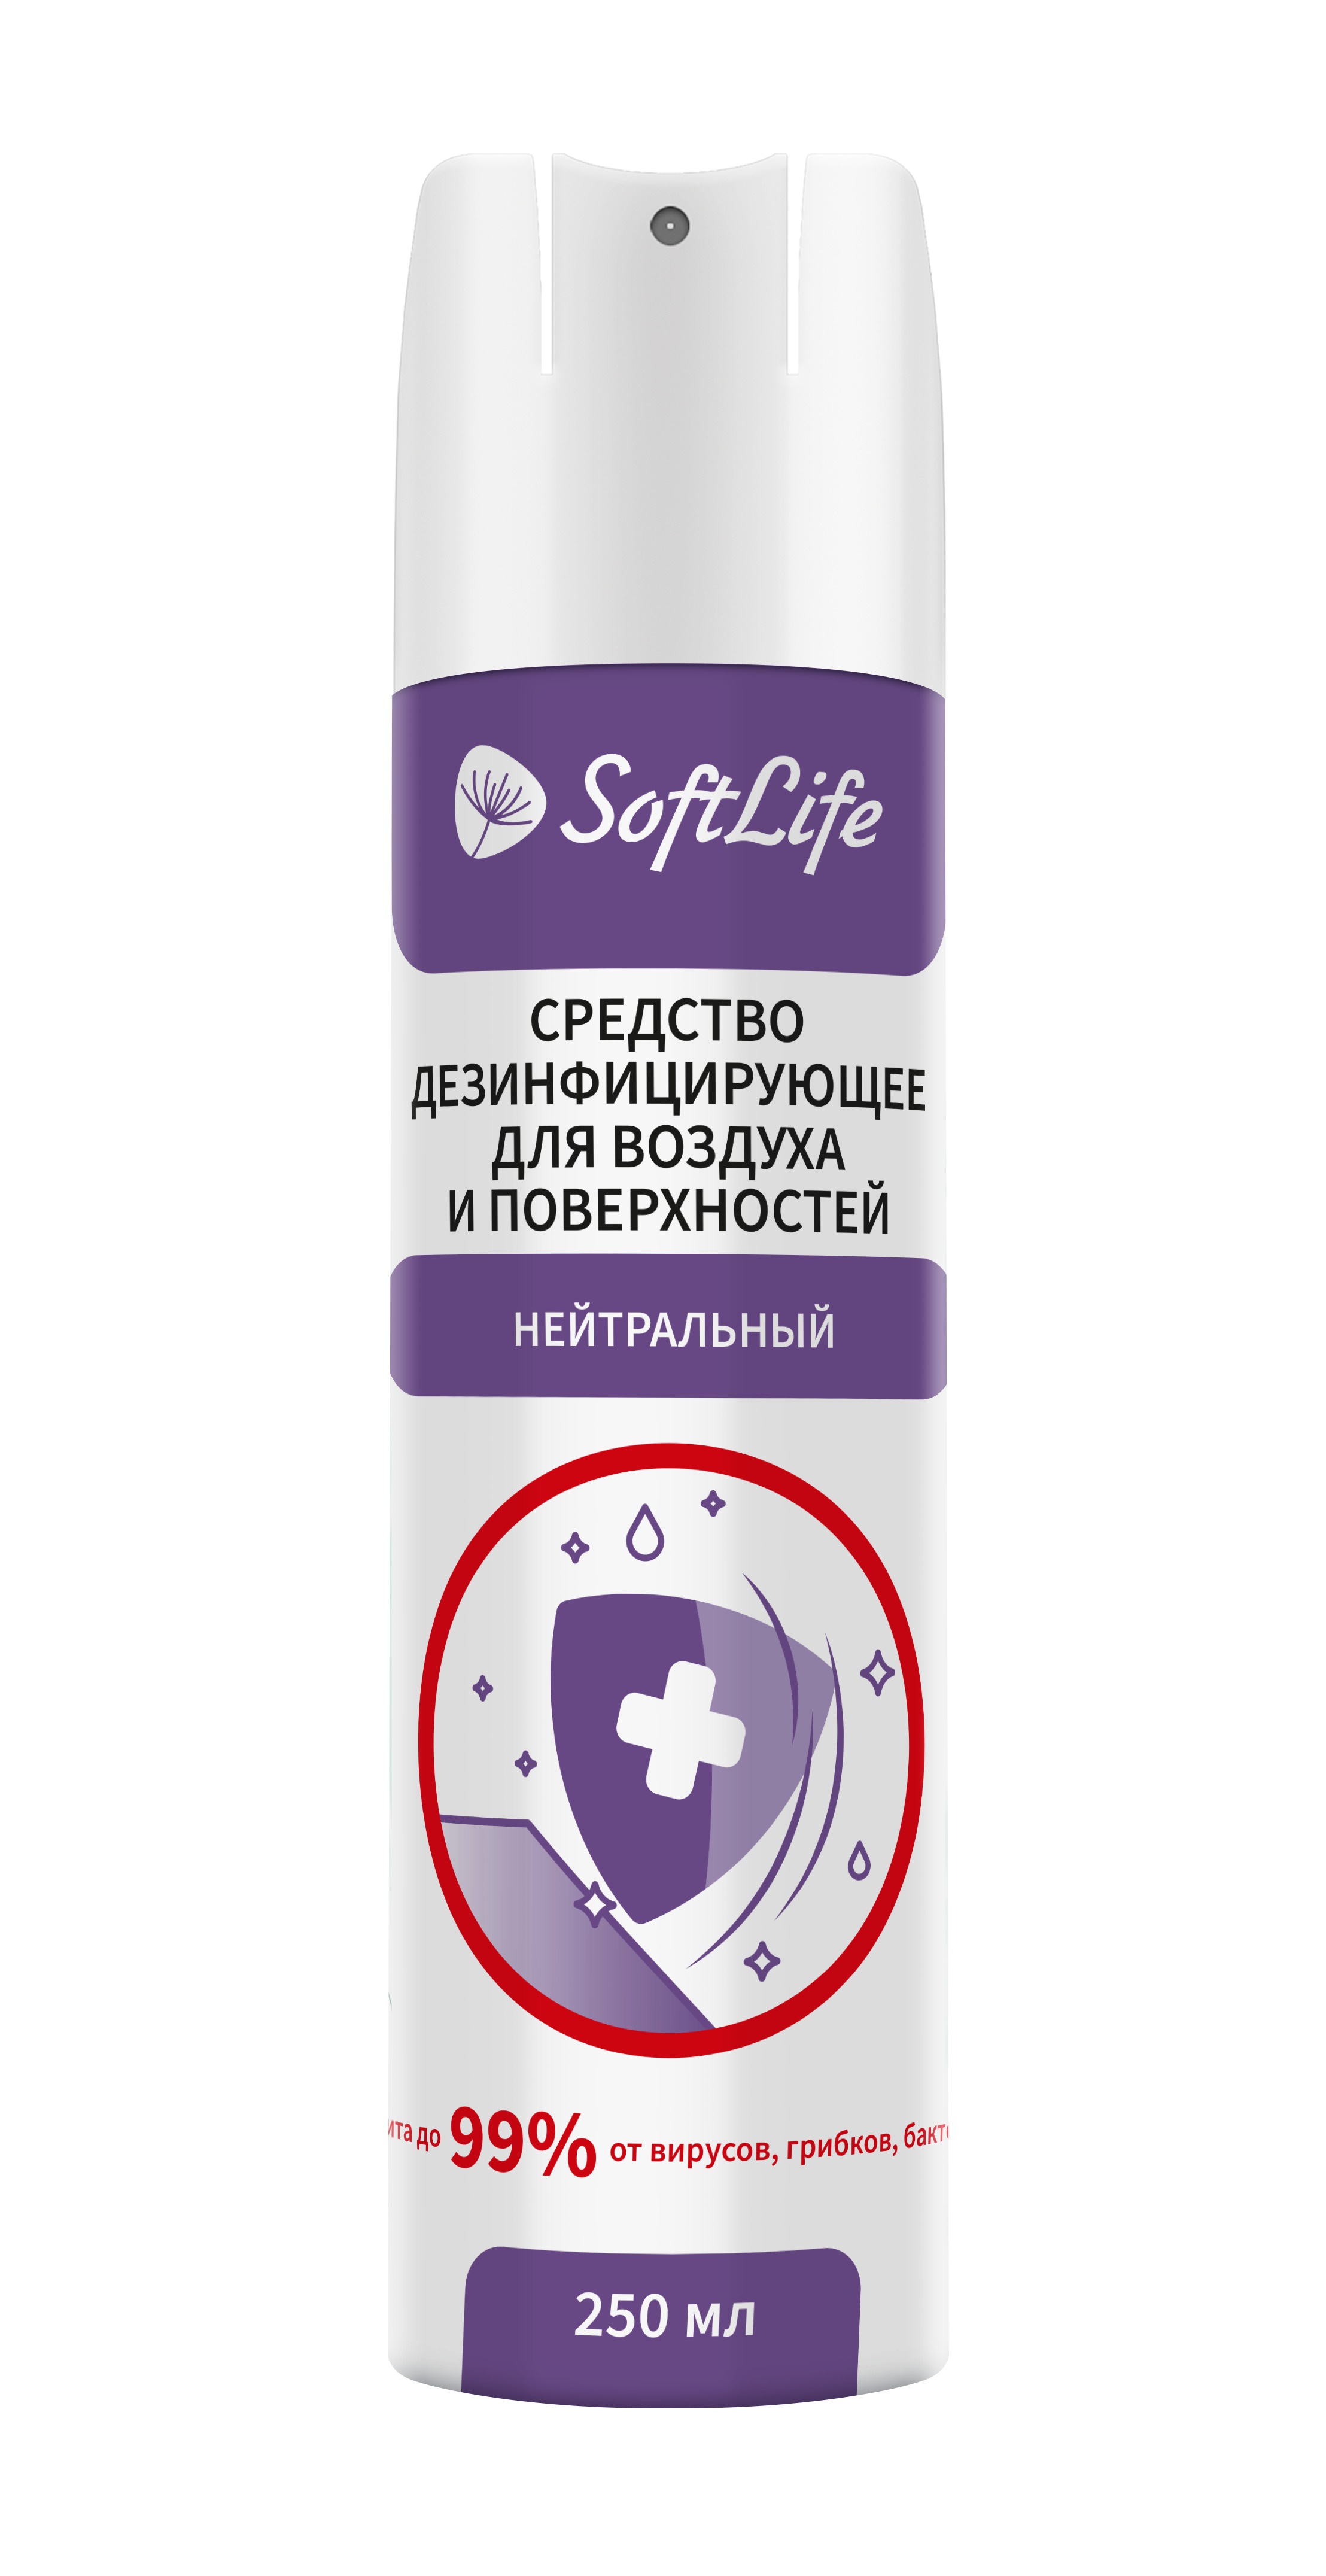 Софтлайф Септима средство для дезинфекции нейтральное 250мл